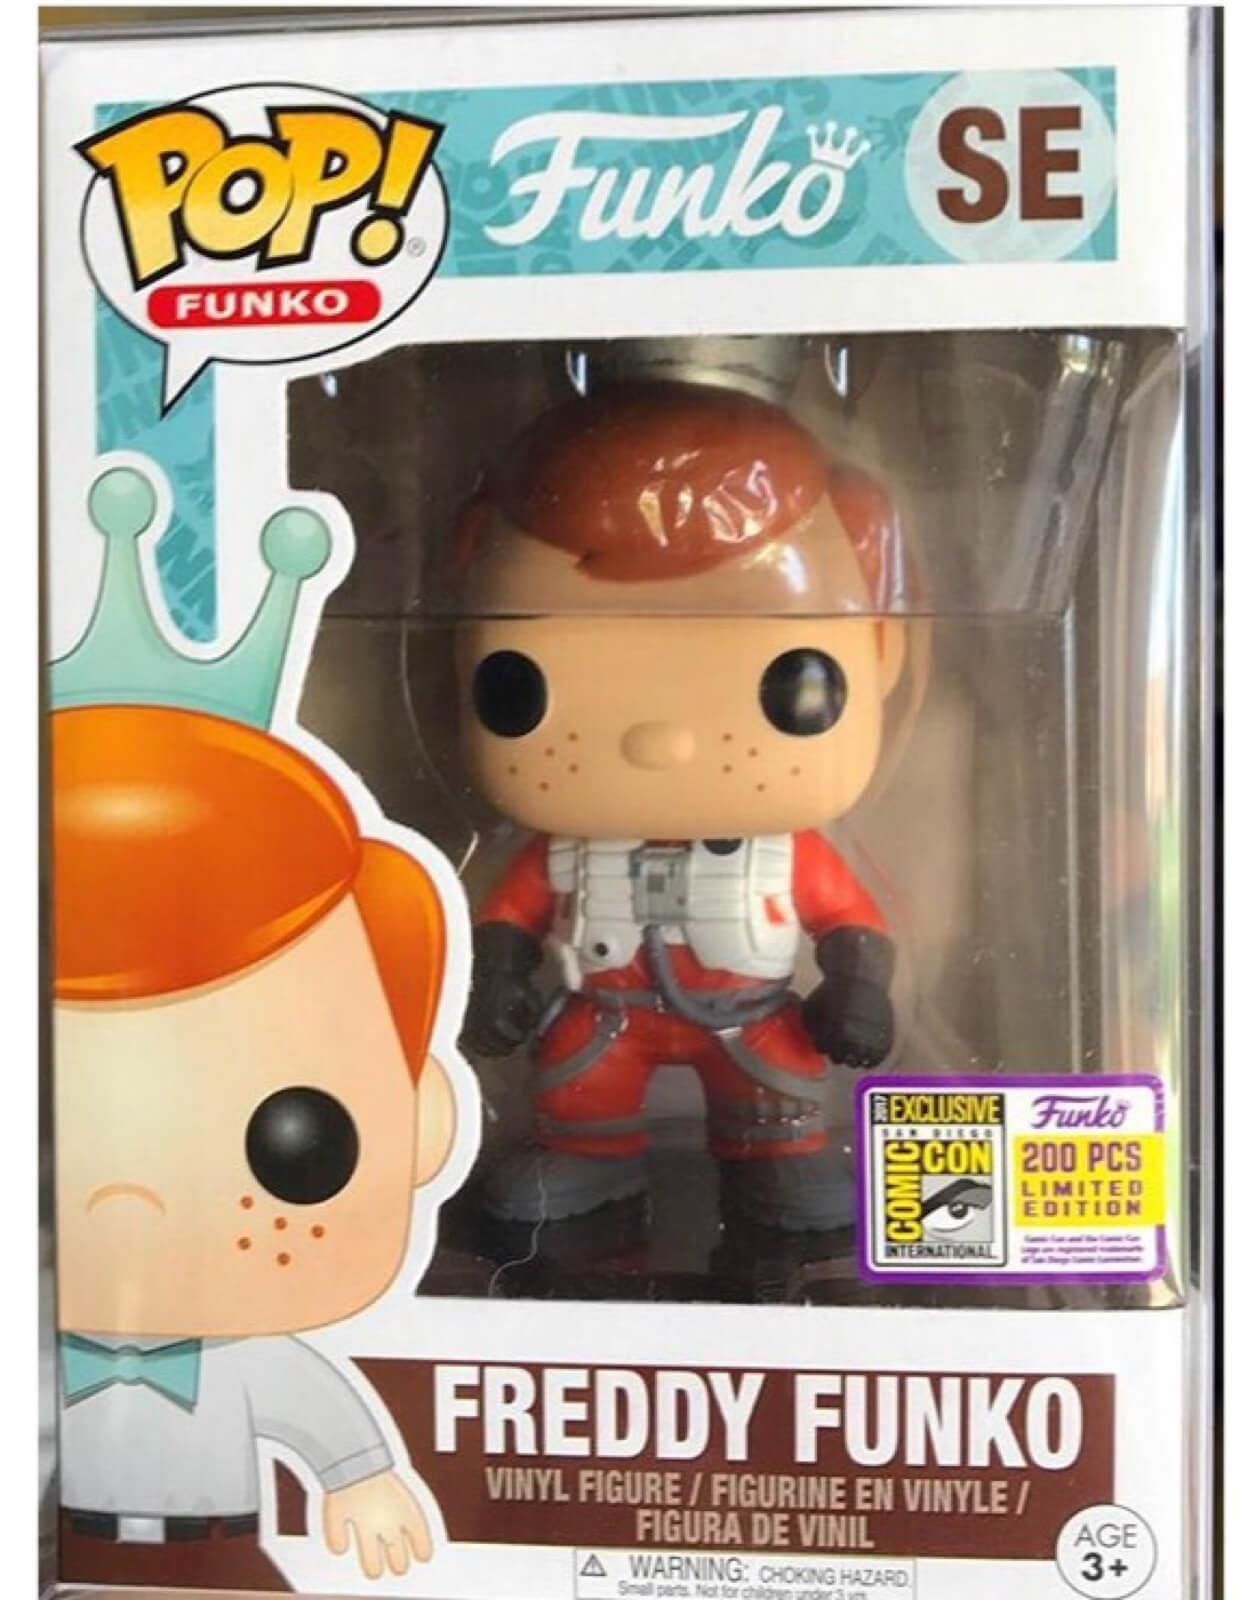 Funko Pop! Freddy Funko (as X-Wing Fighter) (Freddy Funko)